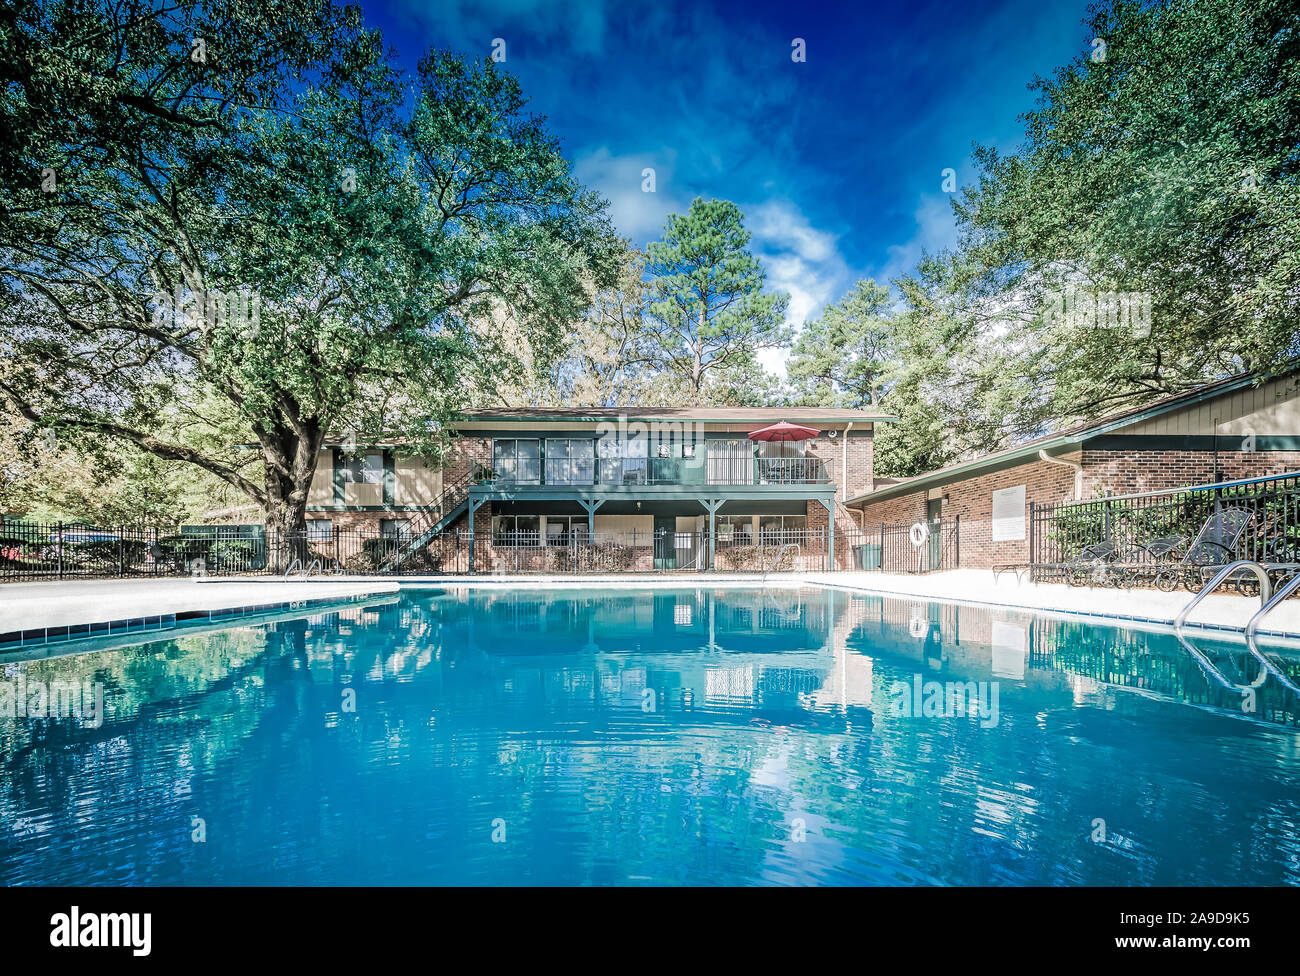 Une piscine intérieure est l'un des équipements disponibles pour les résidents de maisons de vacances Bois d'automne, le 27 novembre 2015, à Mobile, Alabama. Banque D'Images